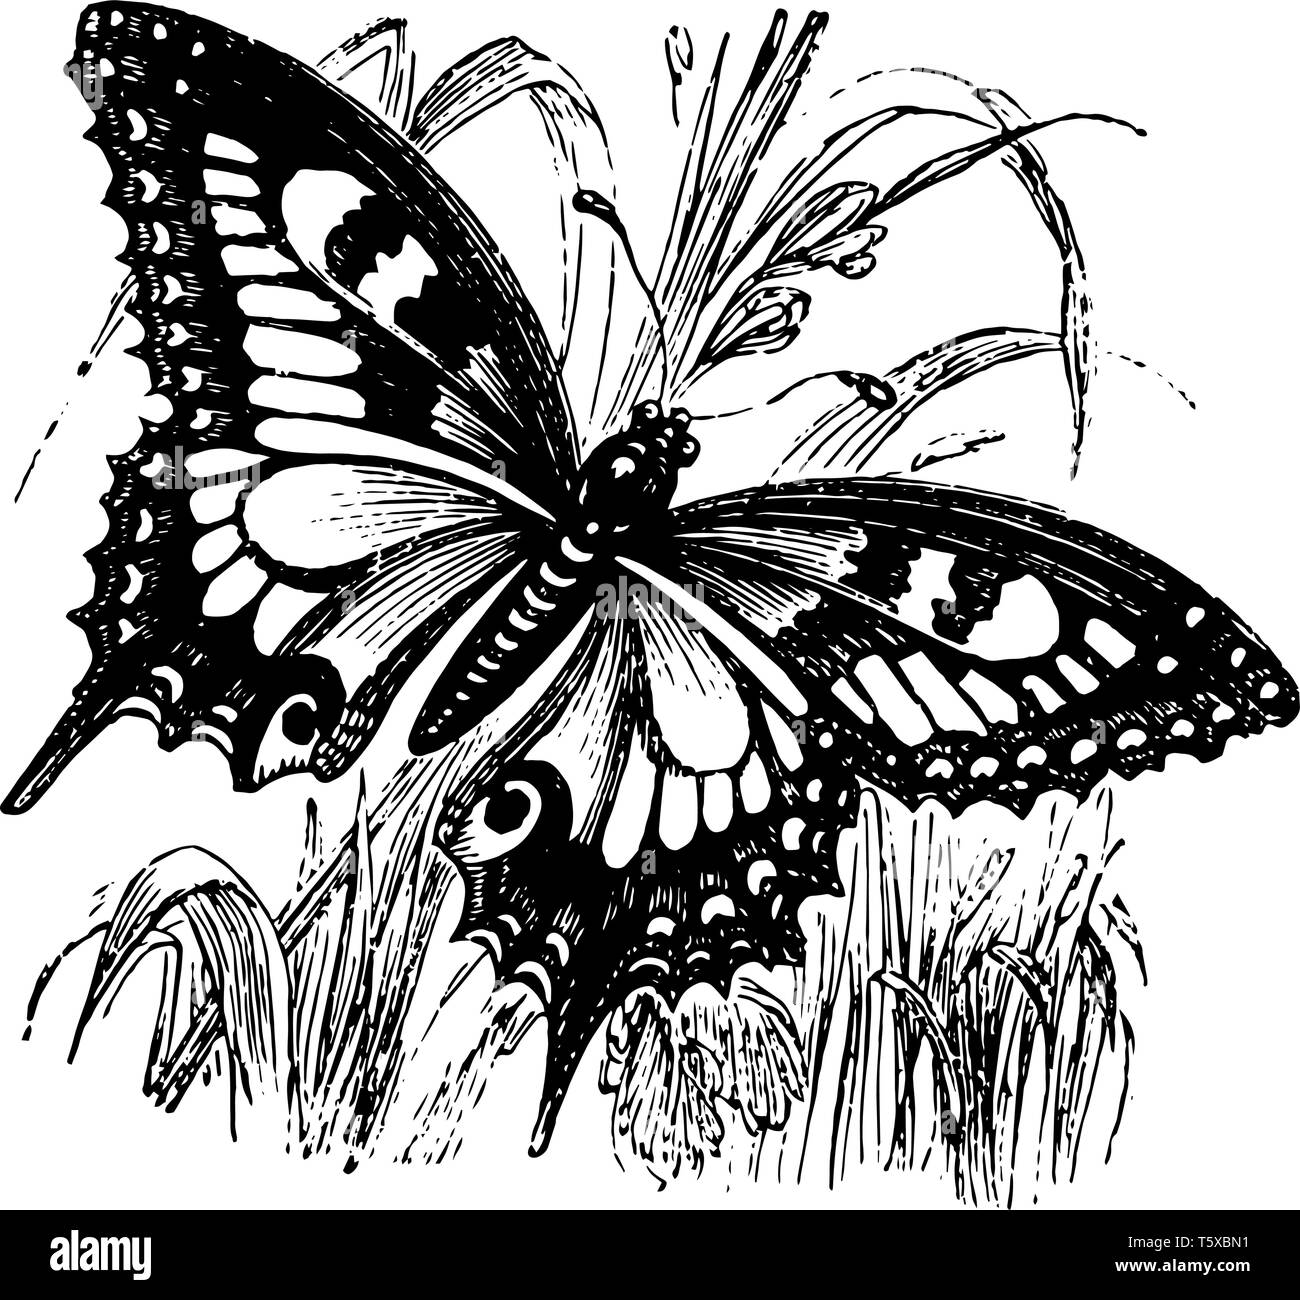 Schwalbenschwanz Schmetterling ist eine große bunte Schmetterling mit mindestens 550 Arten vintage Strichzeichnung oder Gravur Abbildung. Stock Vektor